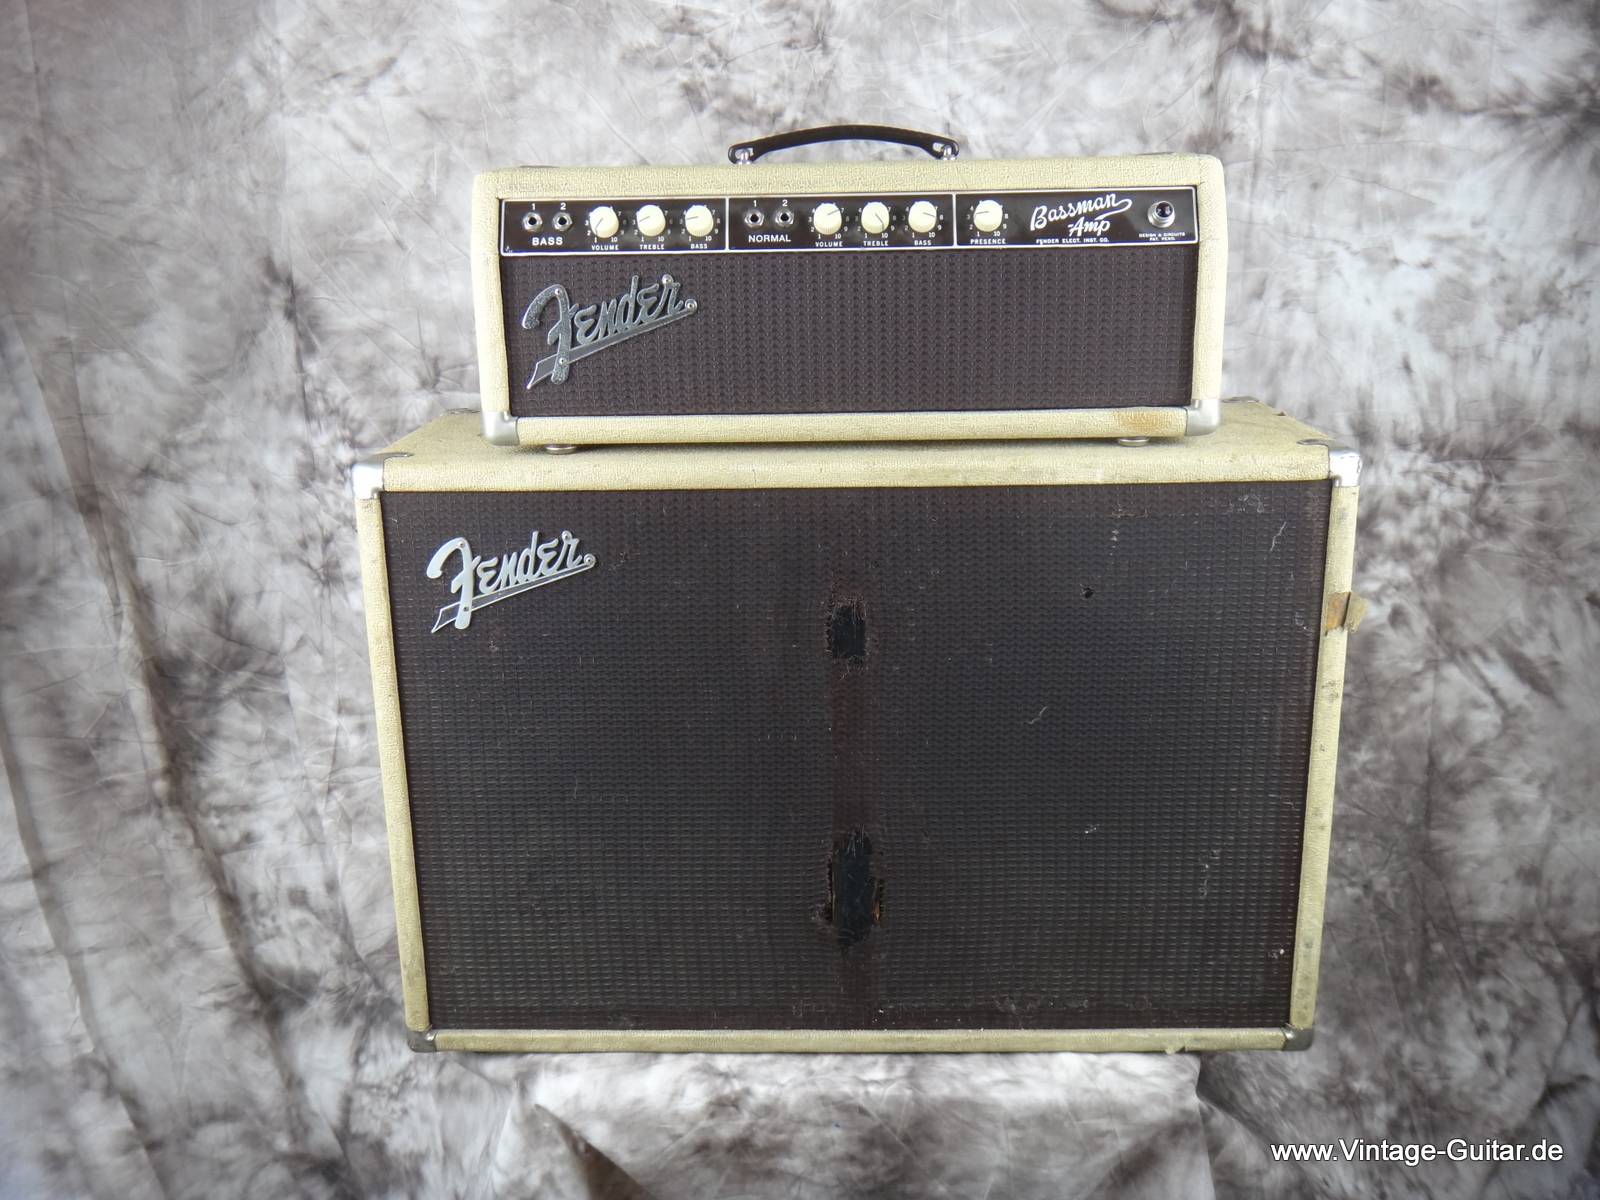 Fender-Bassman-1961-white-tolex-top-and-cabinet-001.JPG